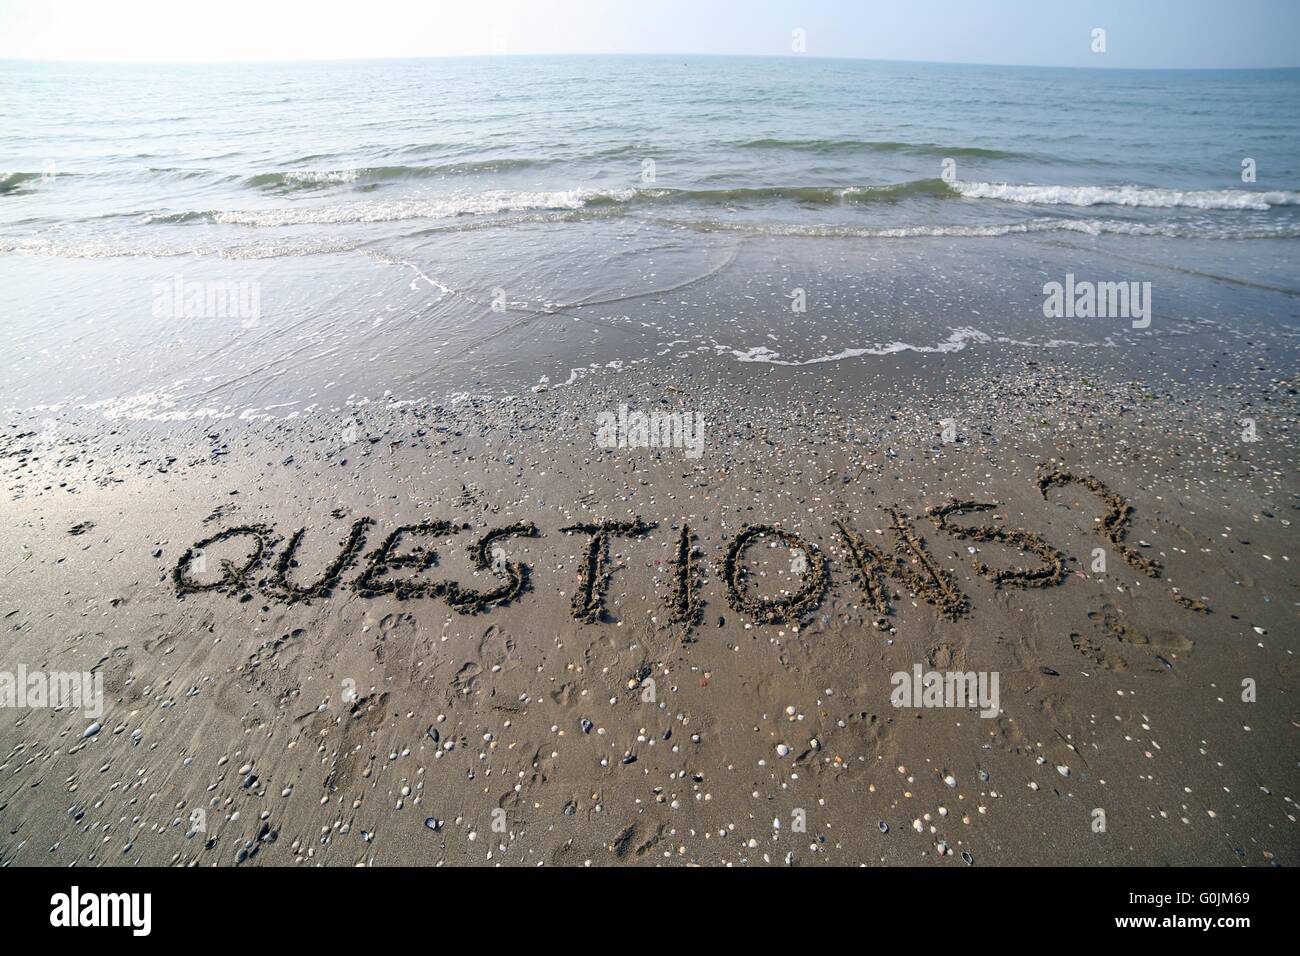 Wort-Fragen geschrieben in großen Lettern auf dem Sand des Meeres Stockfoto